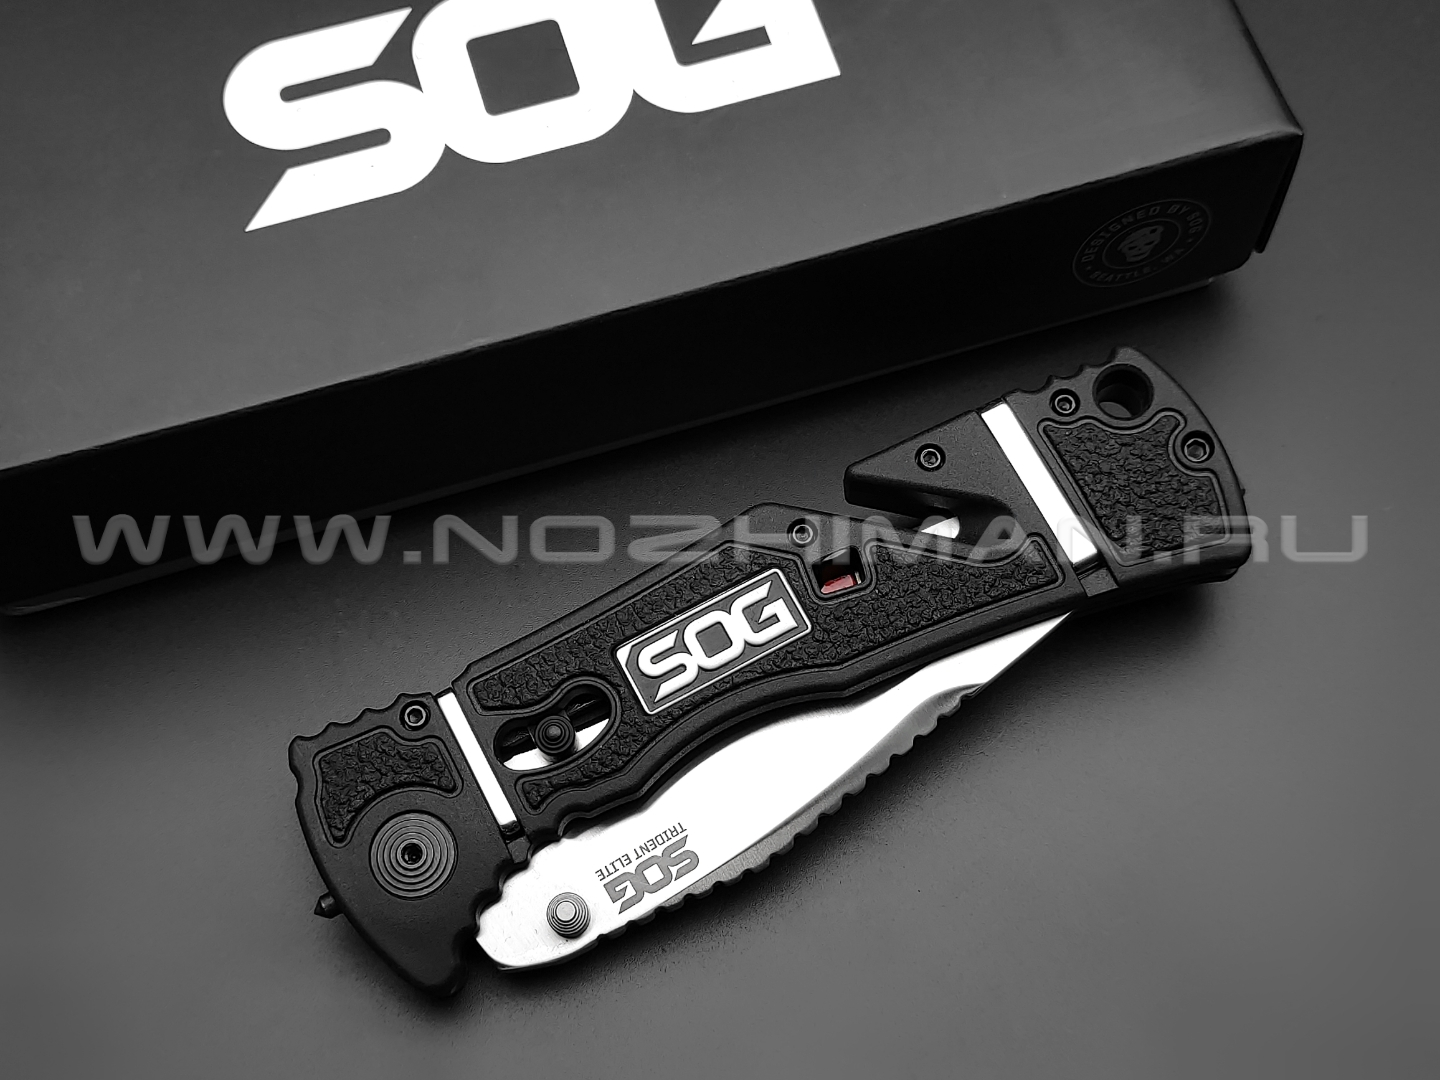 Нож SOG Trident Elite TF101 сталь Aus-8, рукоять Glass Reinforced Nylon